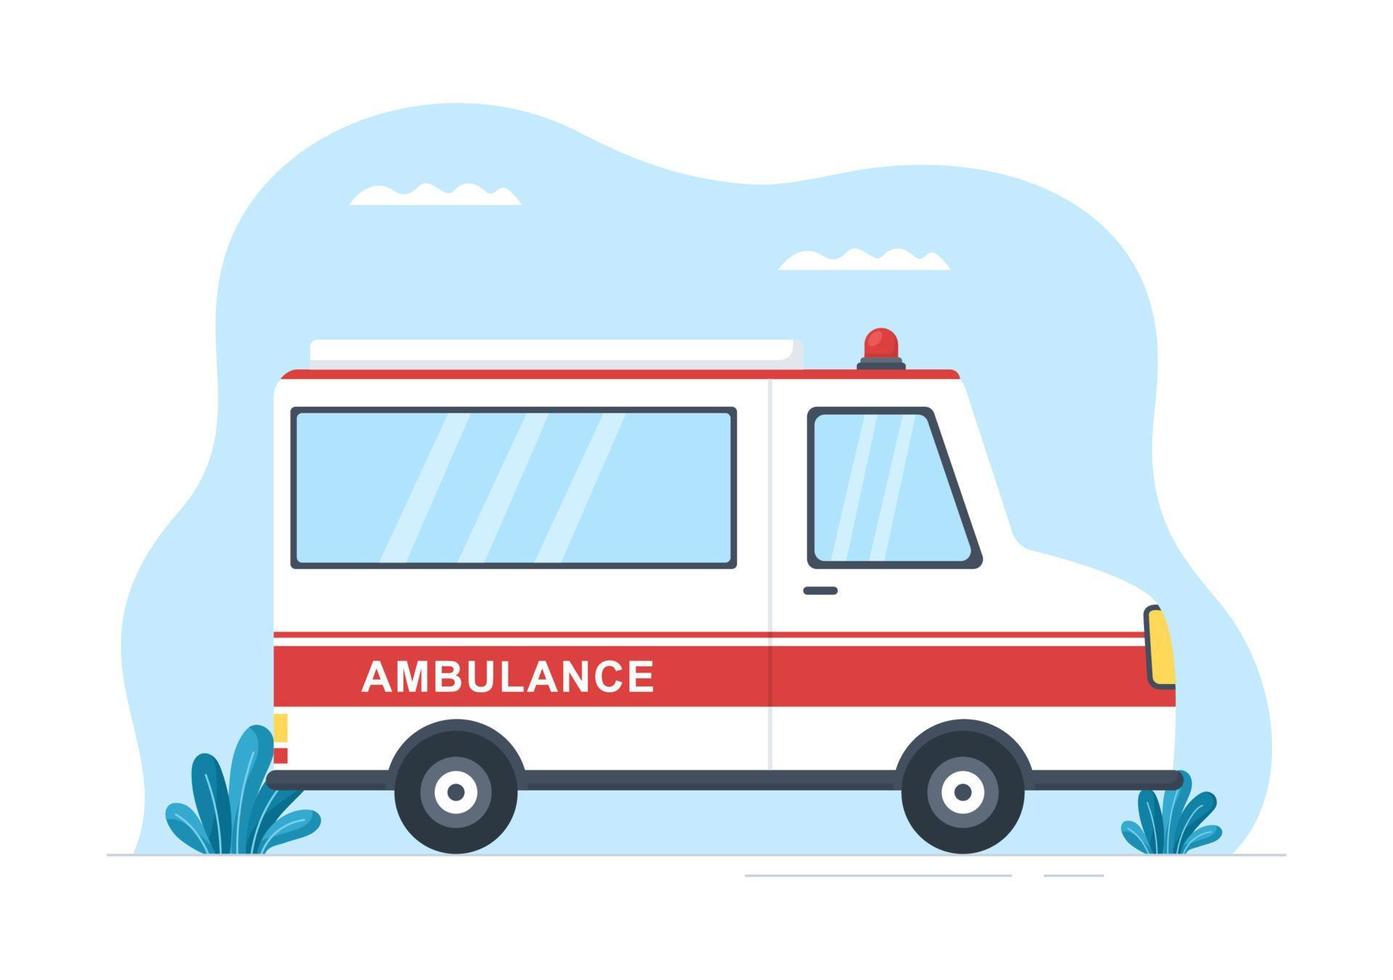 vehículo médico ambulancia coche o servicio de emergencia para recoger al paciente herido en un accidente en dibujos animados planos dibujados a mano ilustración de plantillas vector